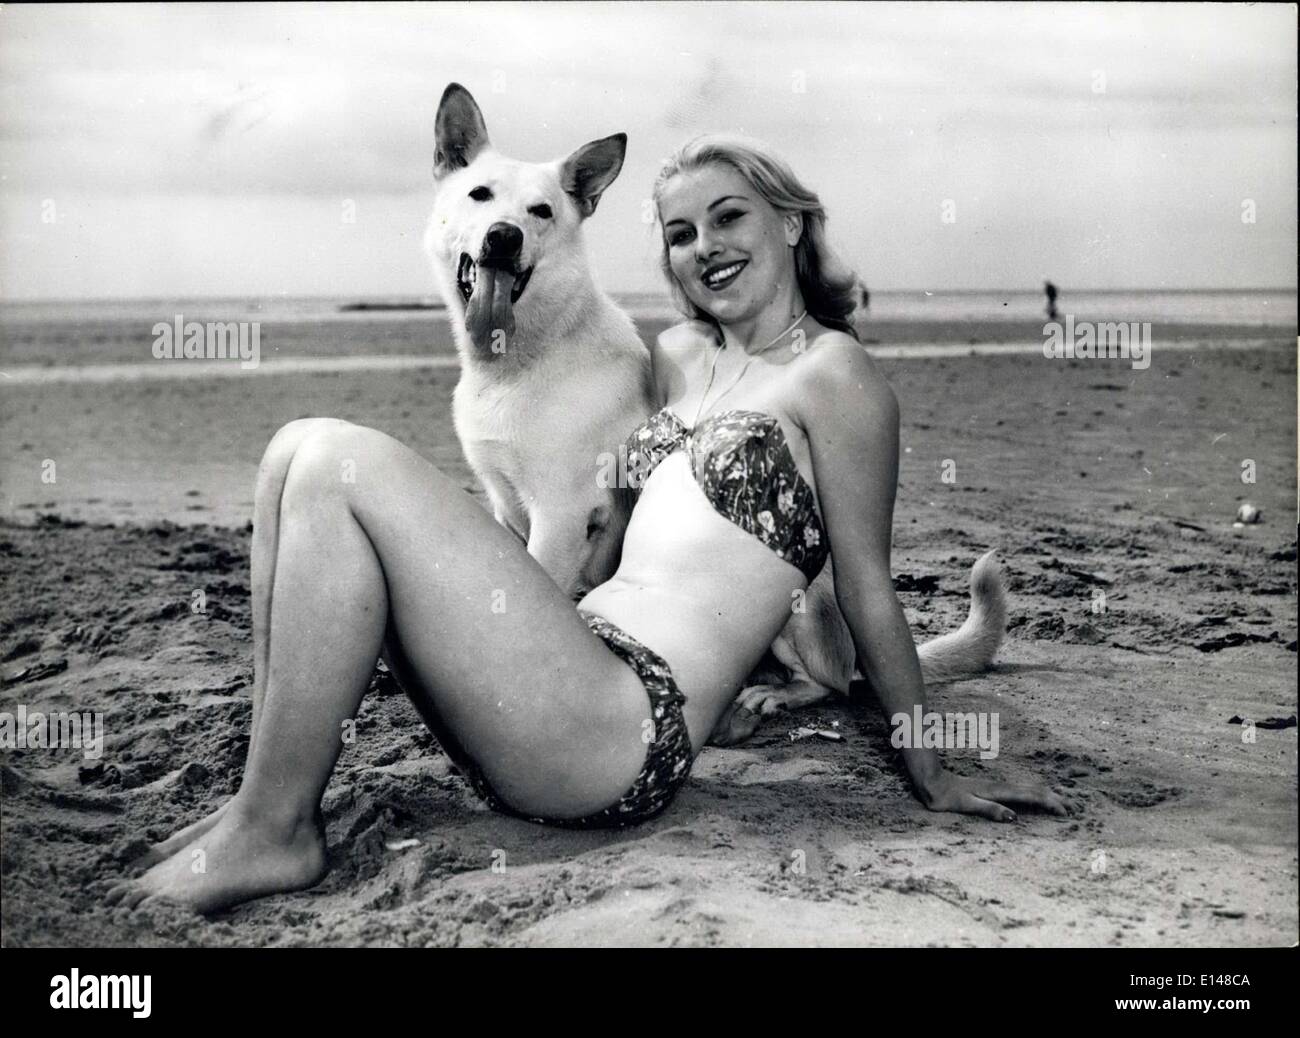 17. April 2012 - zwei Schönheiten am Strand. Jeanette Pearce ist die blonde schöne und Khan der weißen Elsässer ist ihr Glück Begleiter. Stockfoto